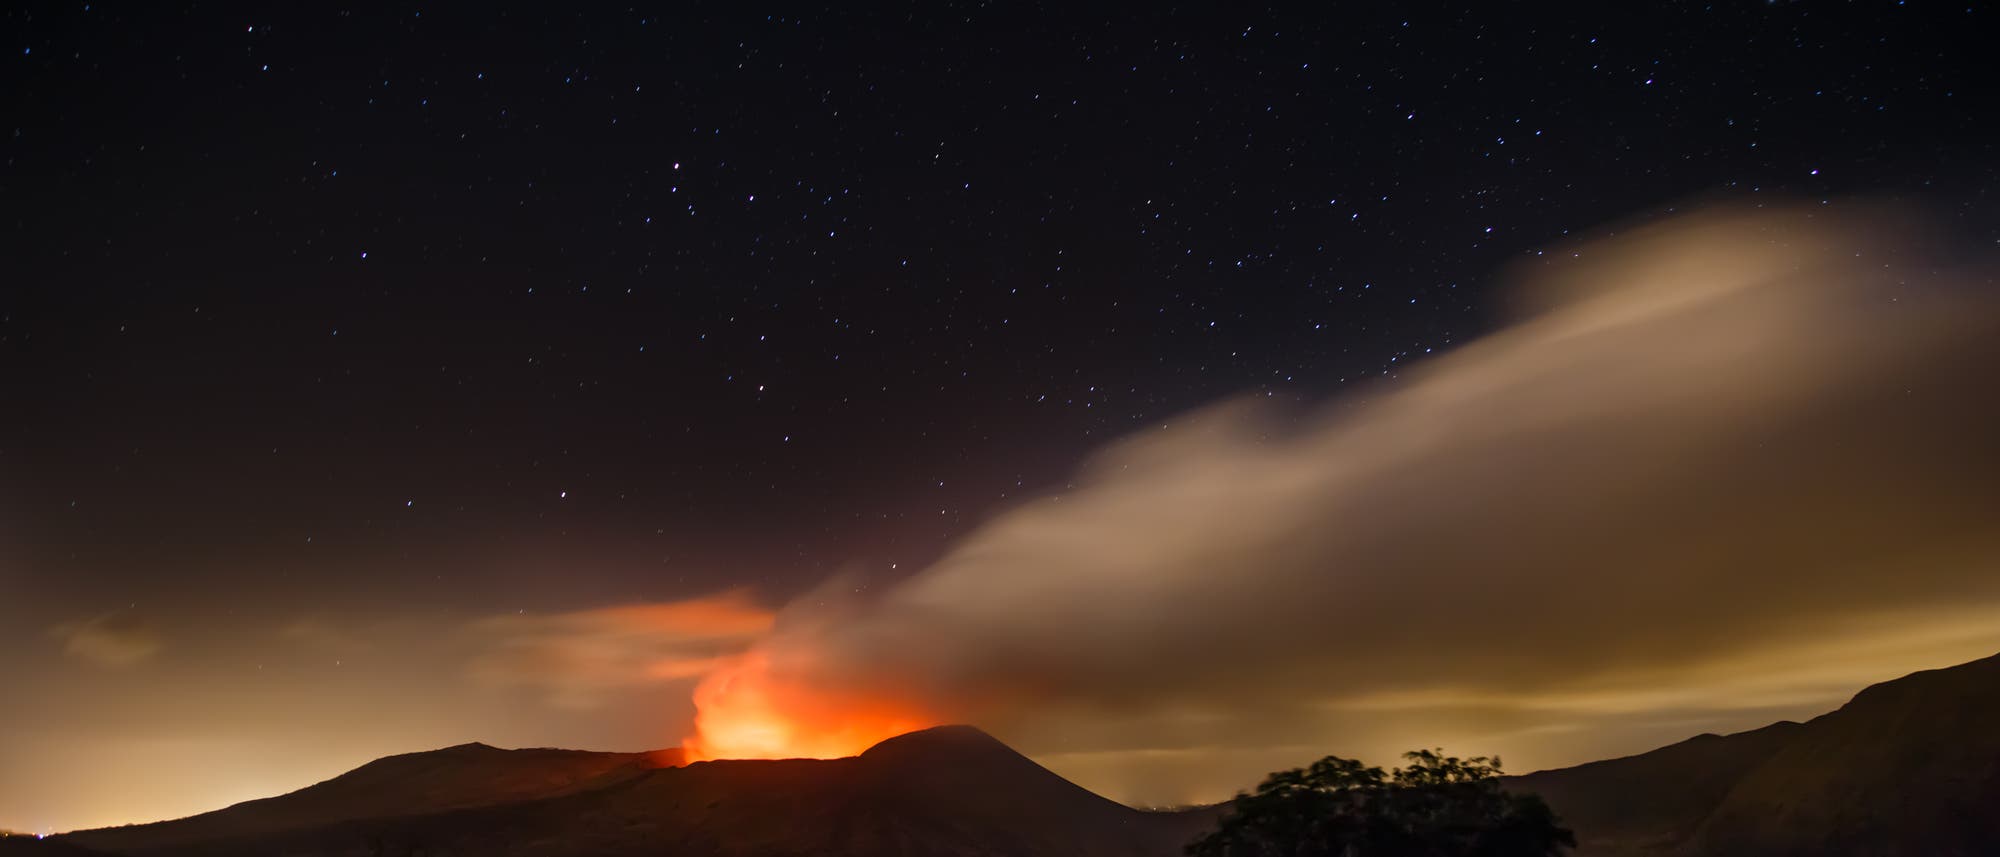 Der aktive Vulkan Masaya liegt in Nicaragua